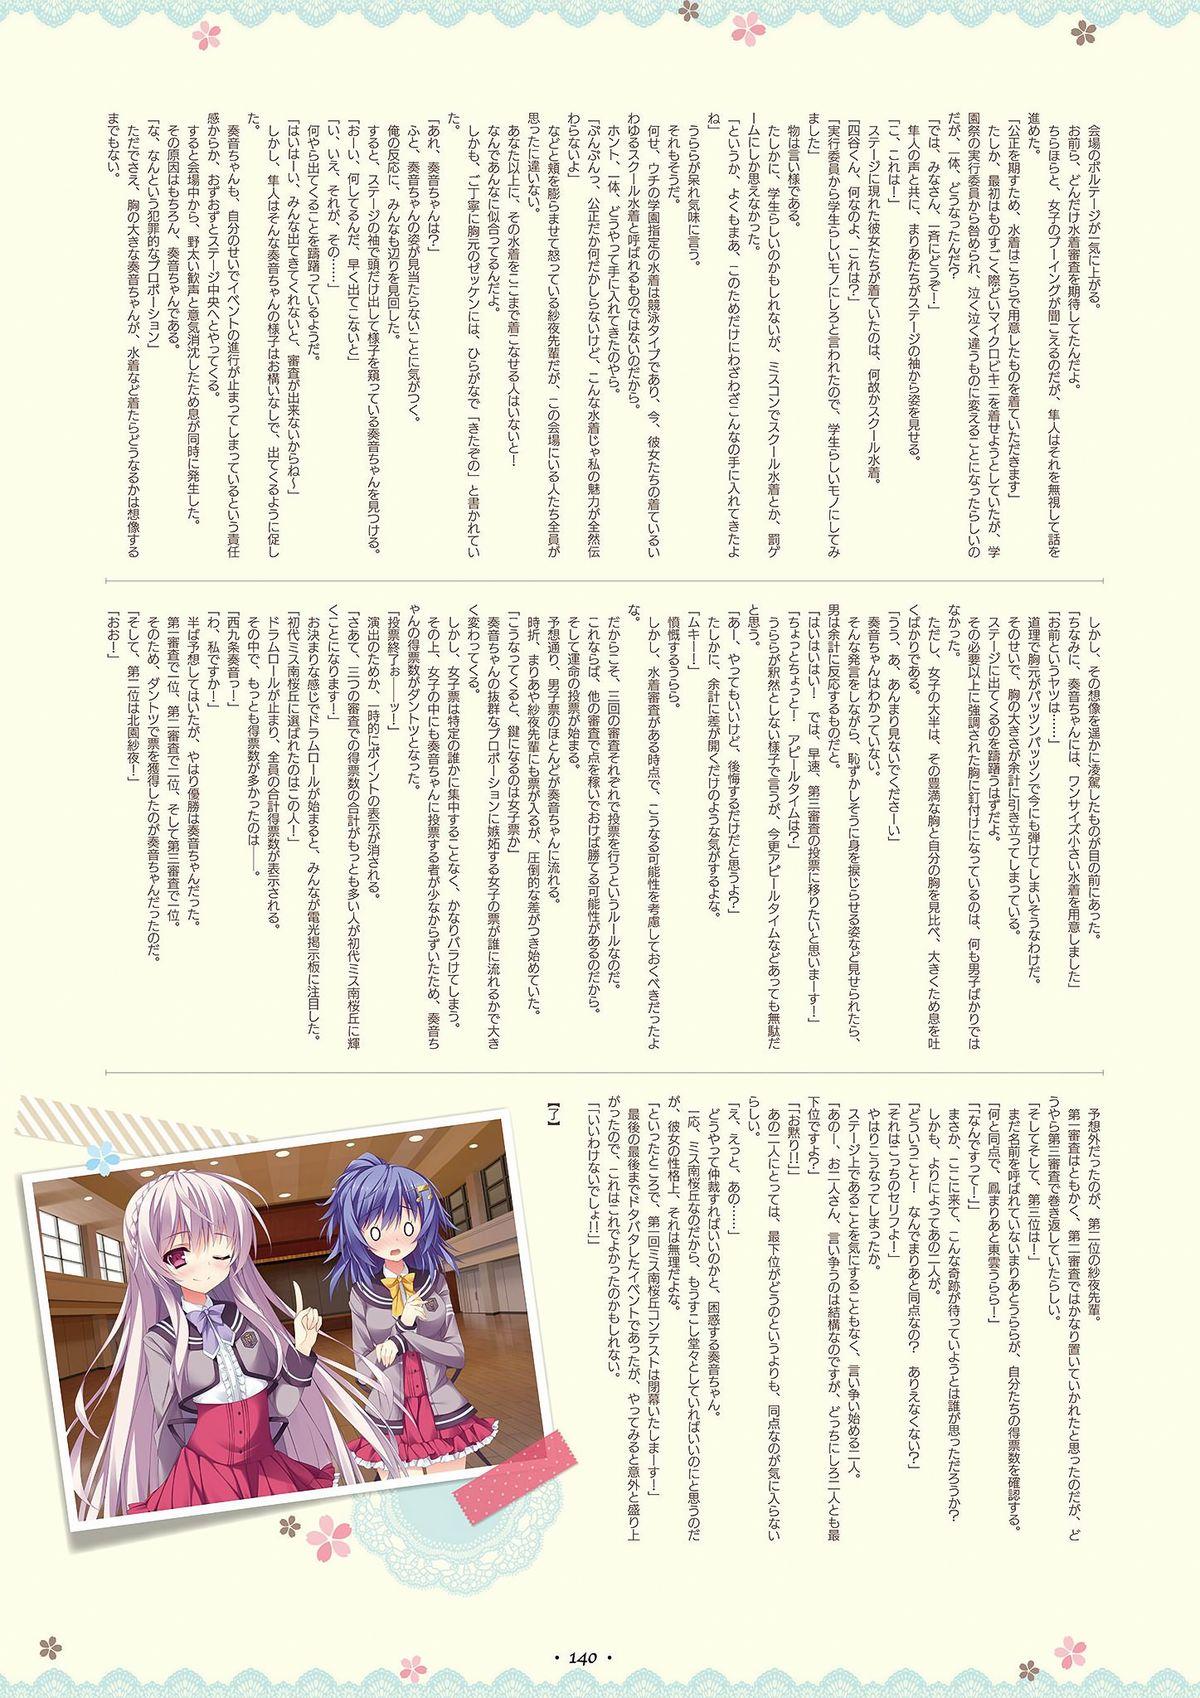 Shukufuku no Kane no Oto wa, Sakura-iro no Kaze to Tomo ni Visual Fanbook 137